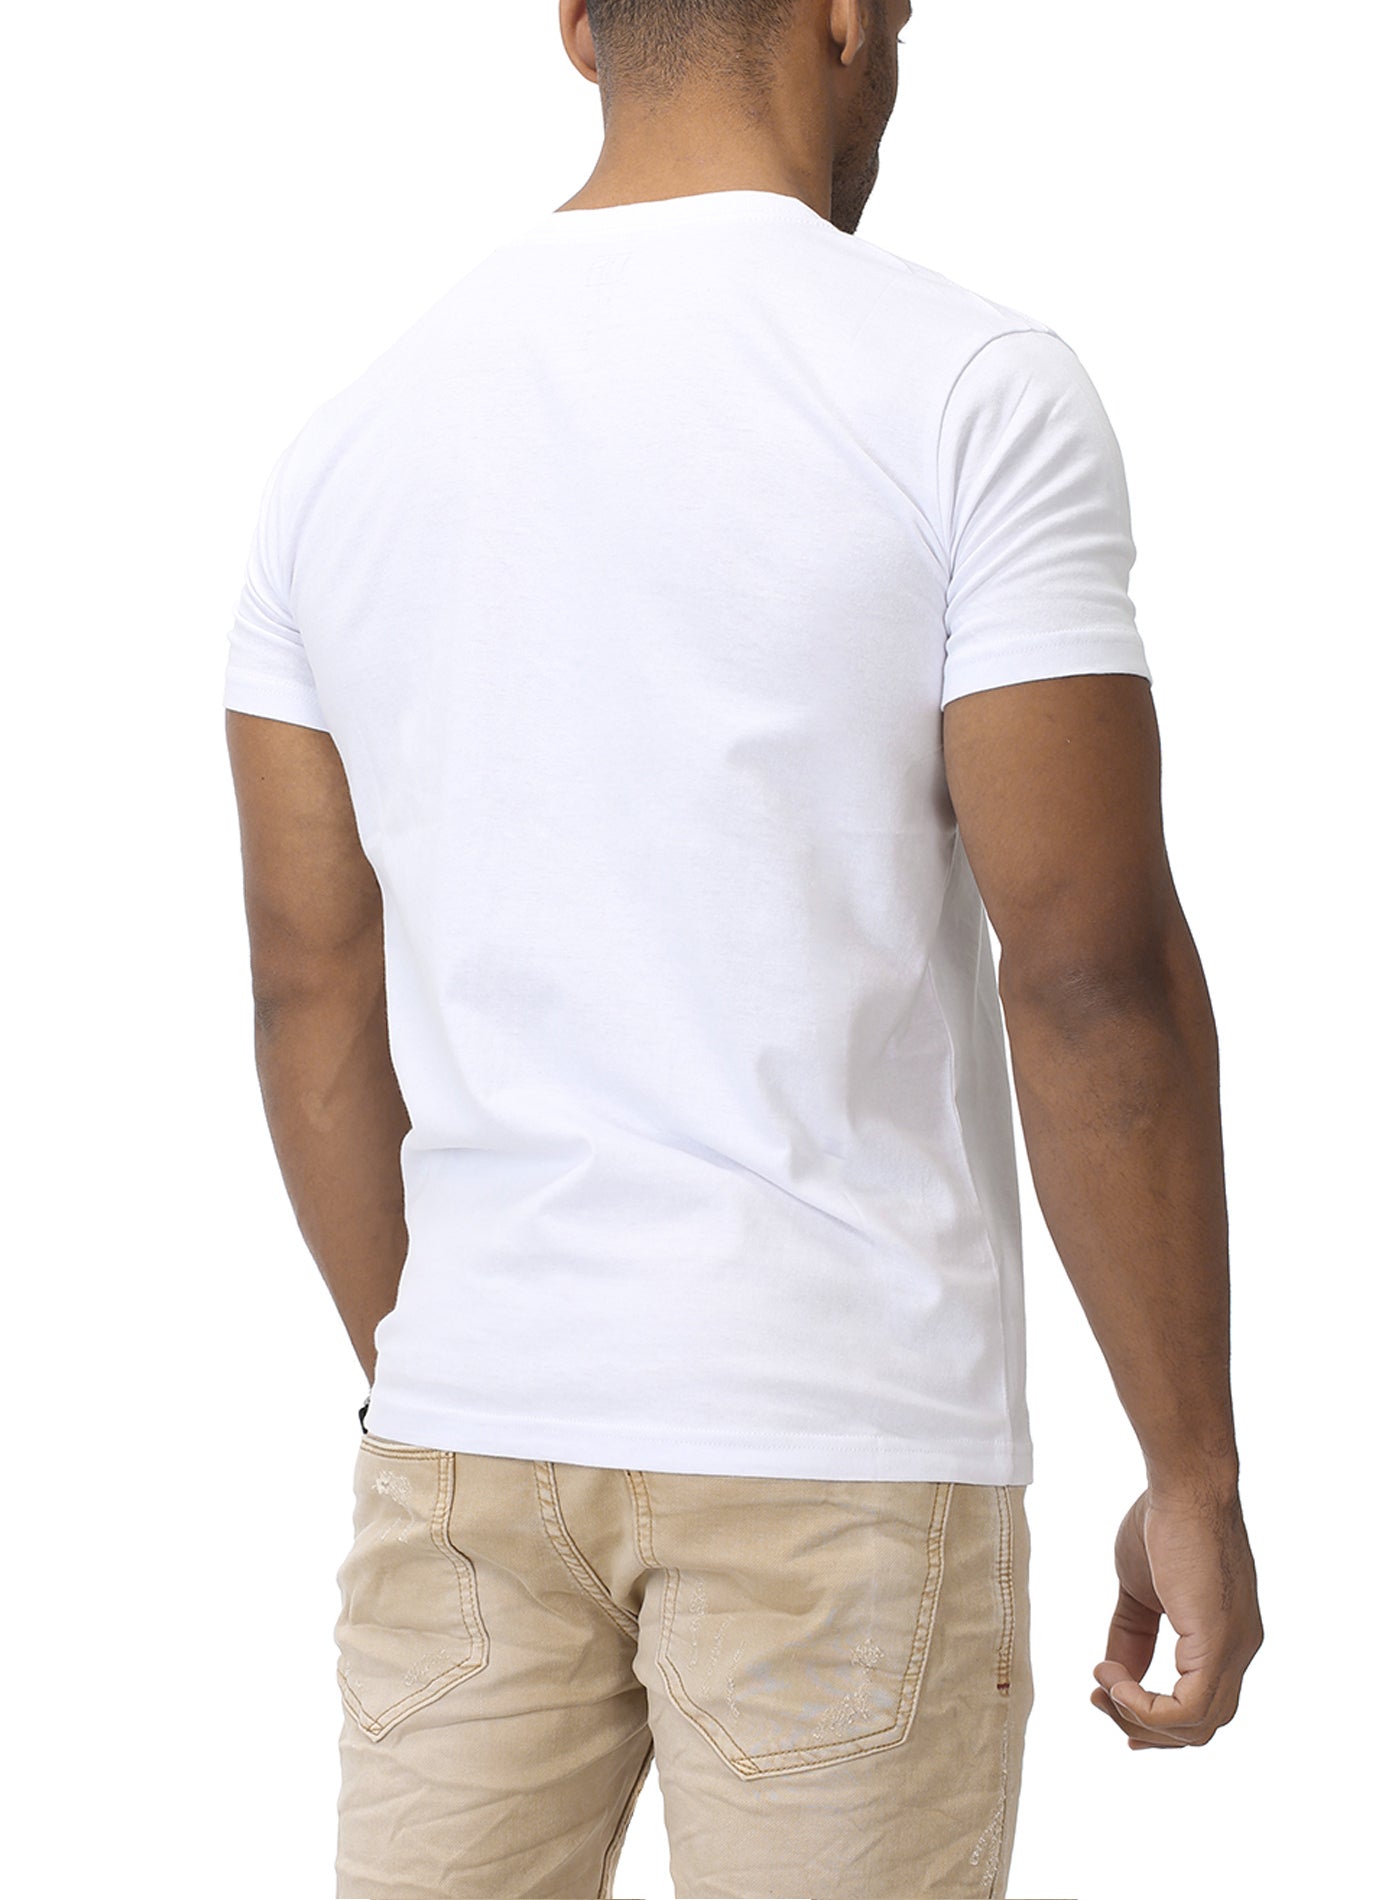 Basic T-Shirt V-Neck